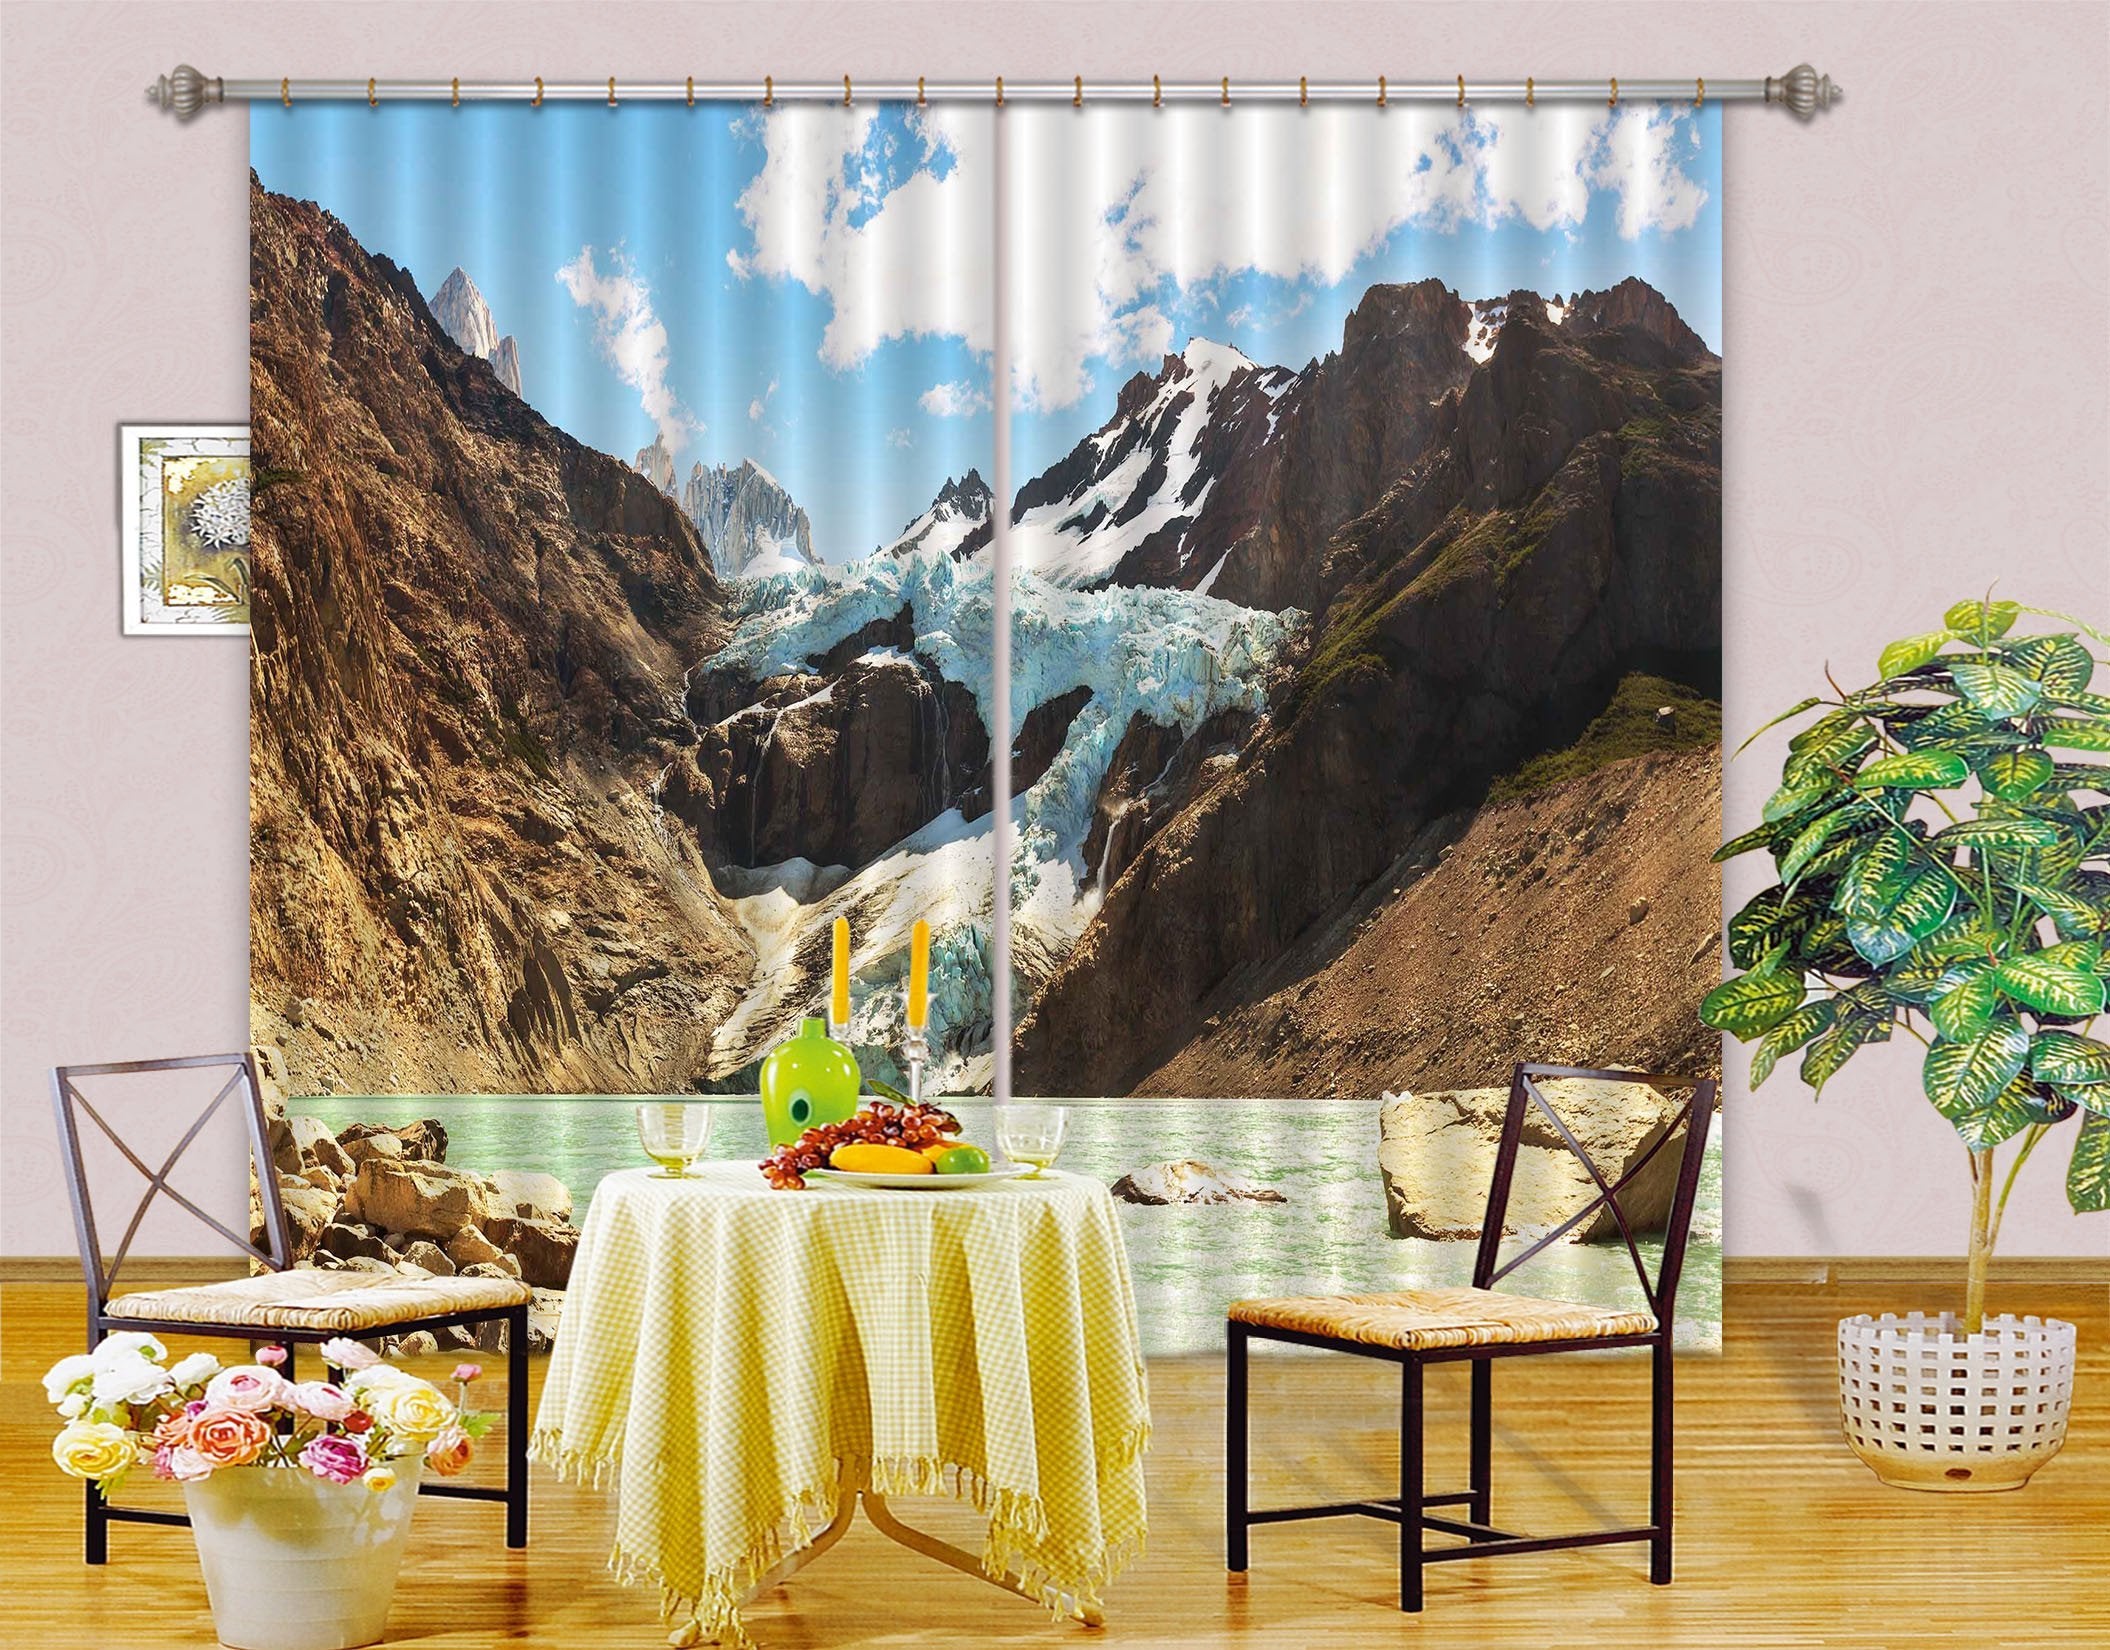 3D Snow Mountains Lake 06 Curtains Drapes Wallpaper AJ Wallpaper 